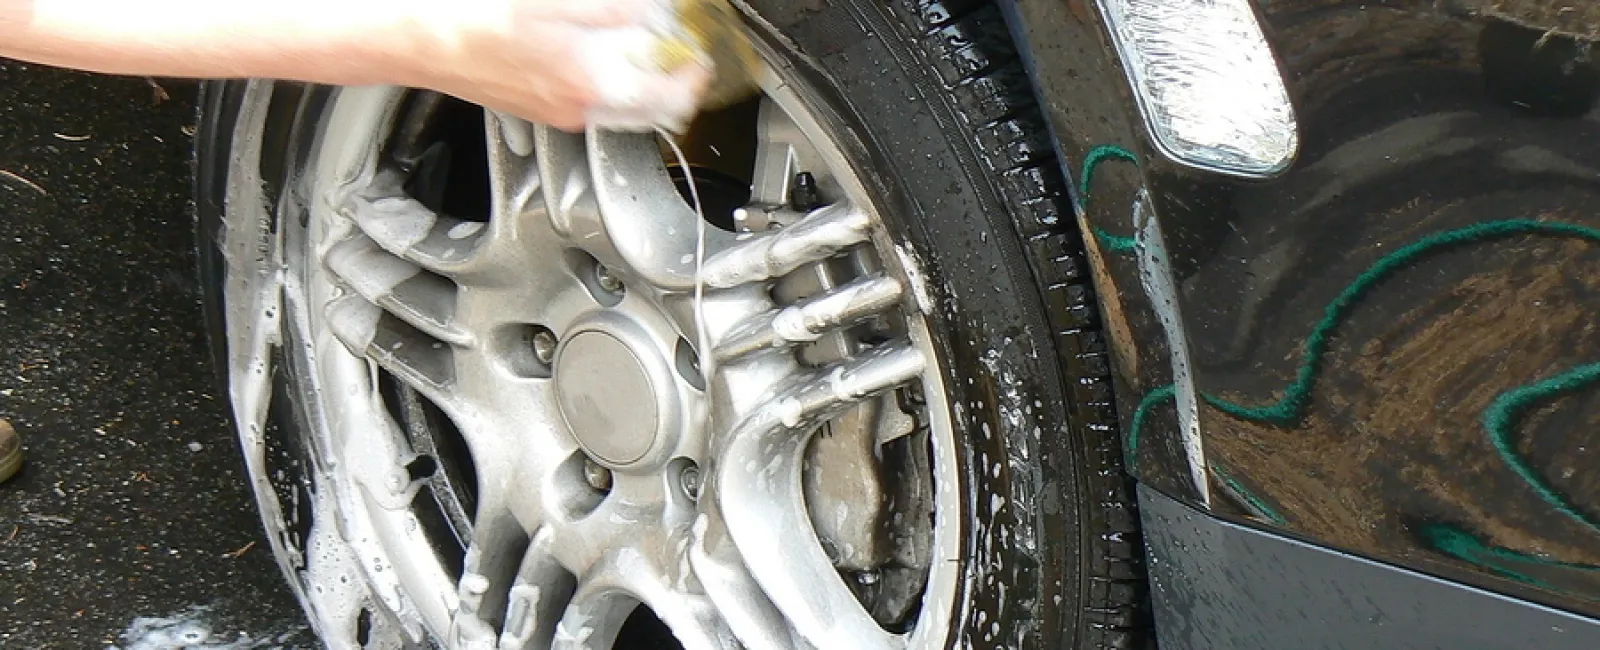 Why Get a Professional Car Wash?